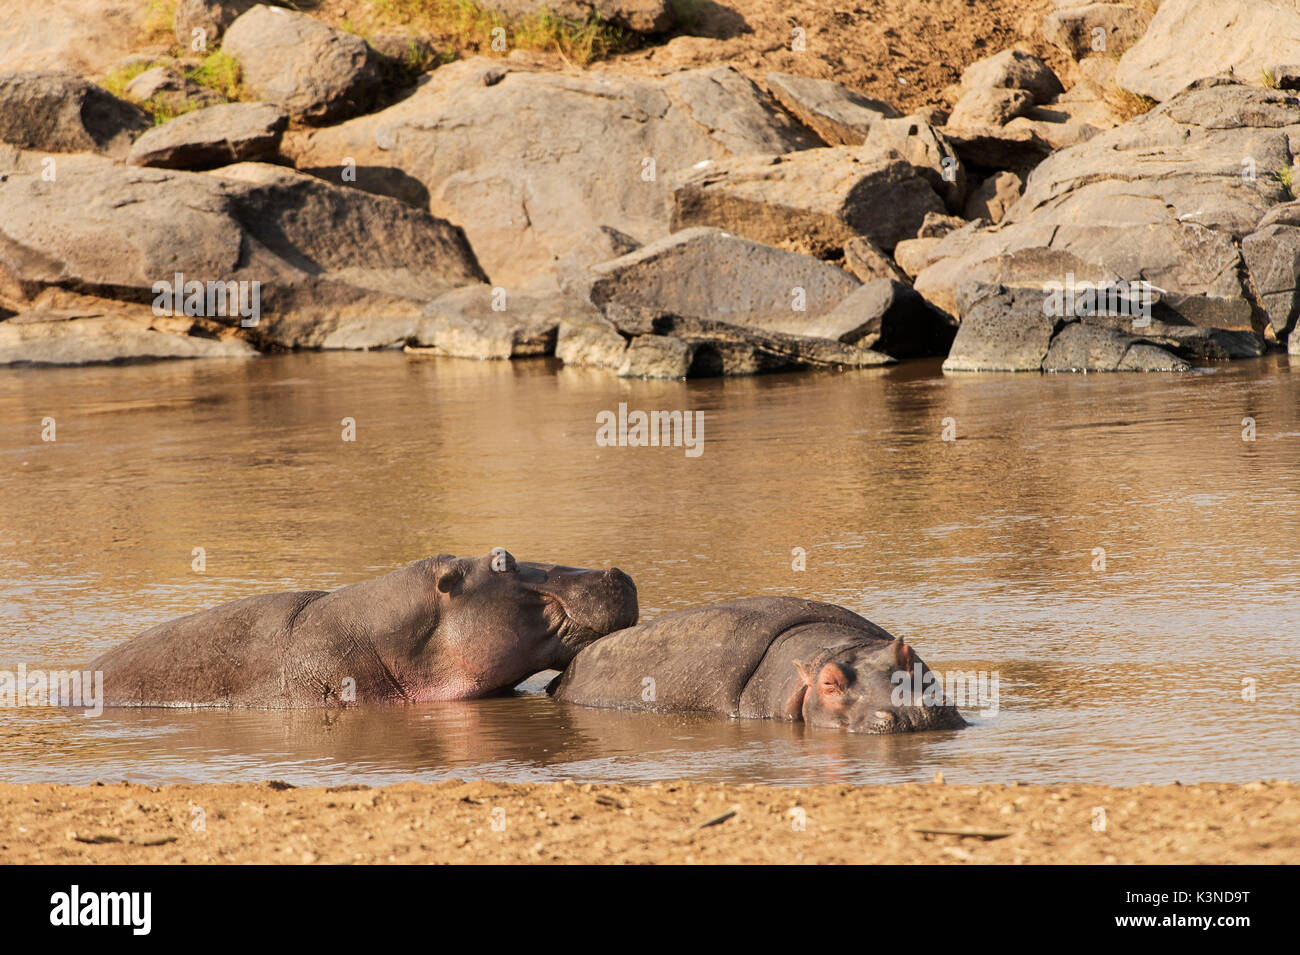 Parc de Masai Mara, Kenya, Afrique, deux hippopotames prises pendant le repos dans une rivière dans le parc de Masai Mara Banque D'Images